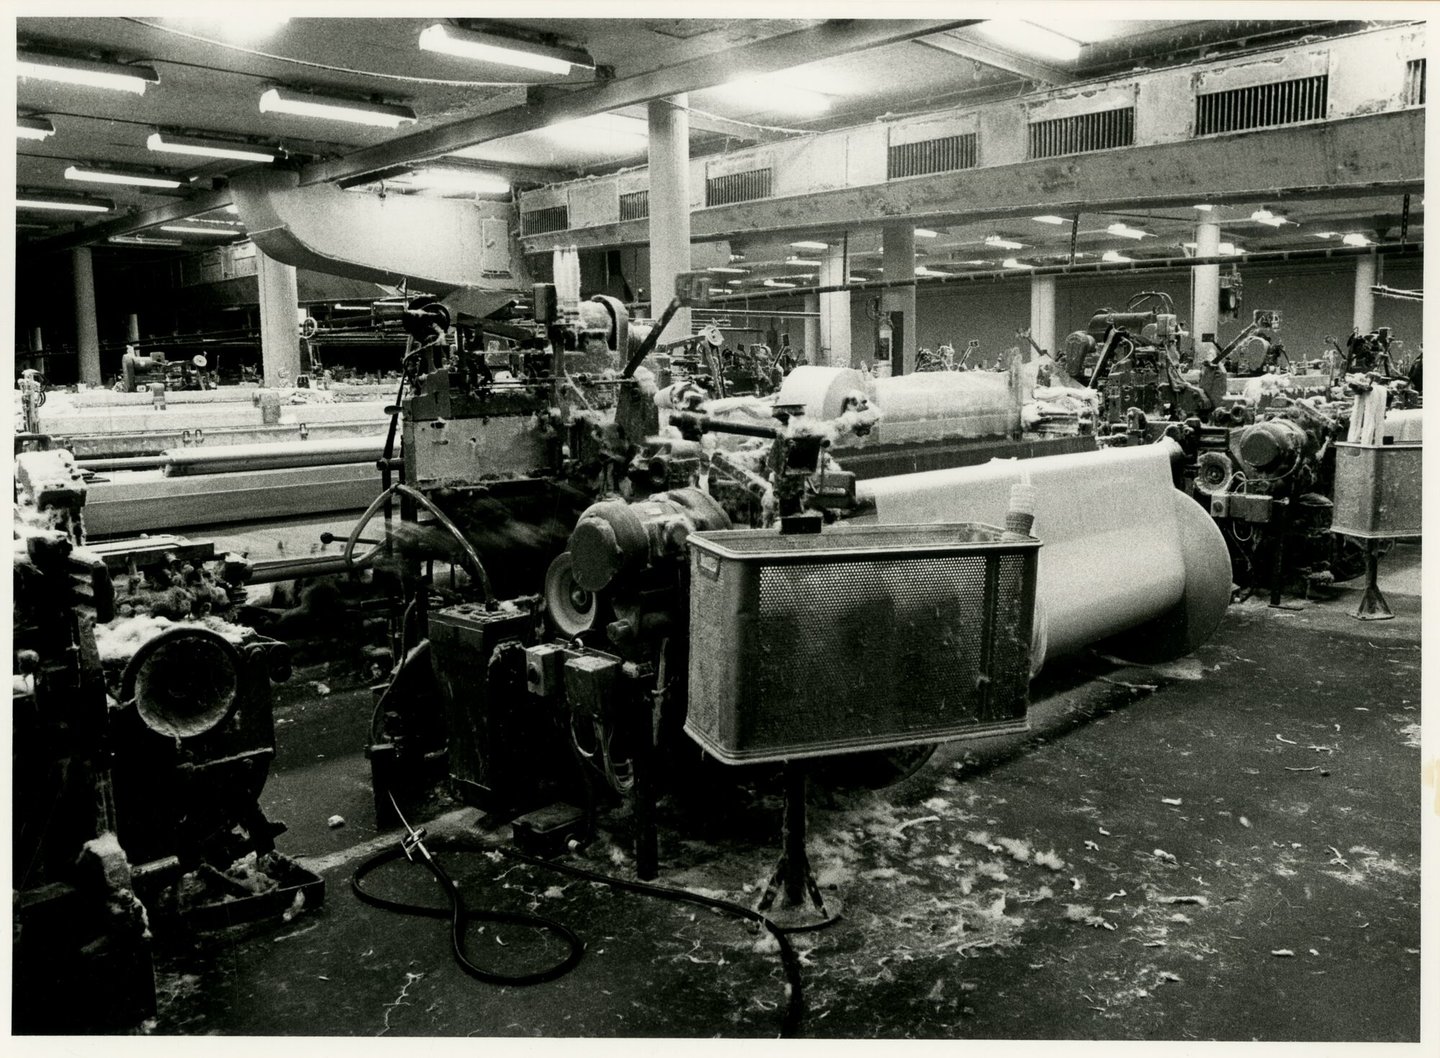 Binnenzicht van weverij textielfabriek De Porre in Gent